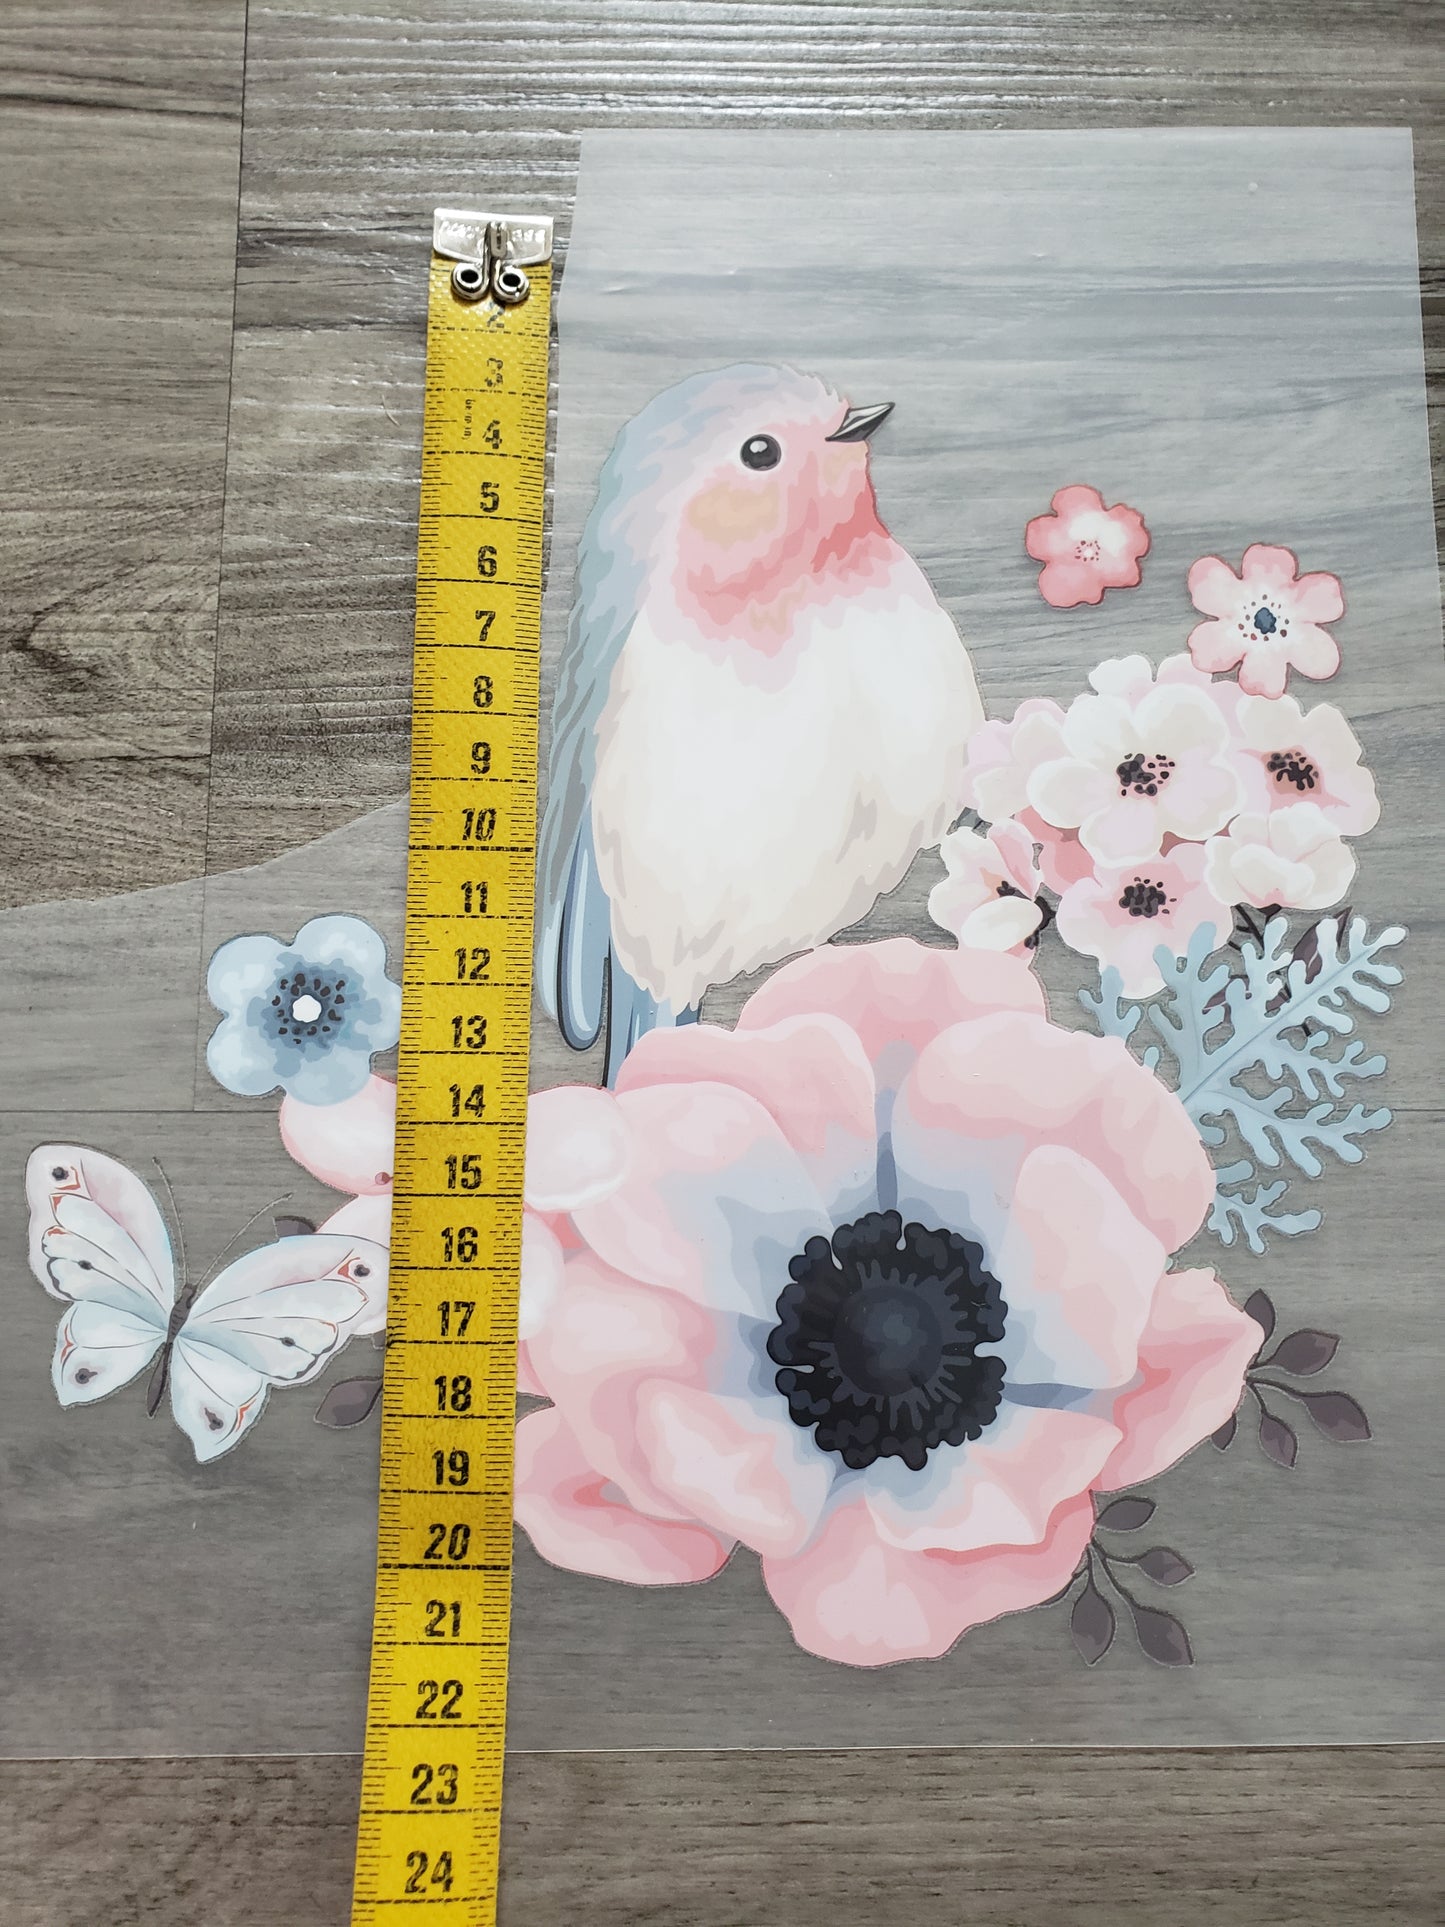 XL Bügelbild Vogel und Blume, nicht selbstgezeichnet! Kann gewerblich genutzt werden